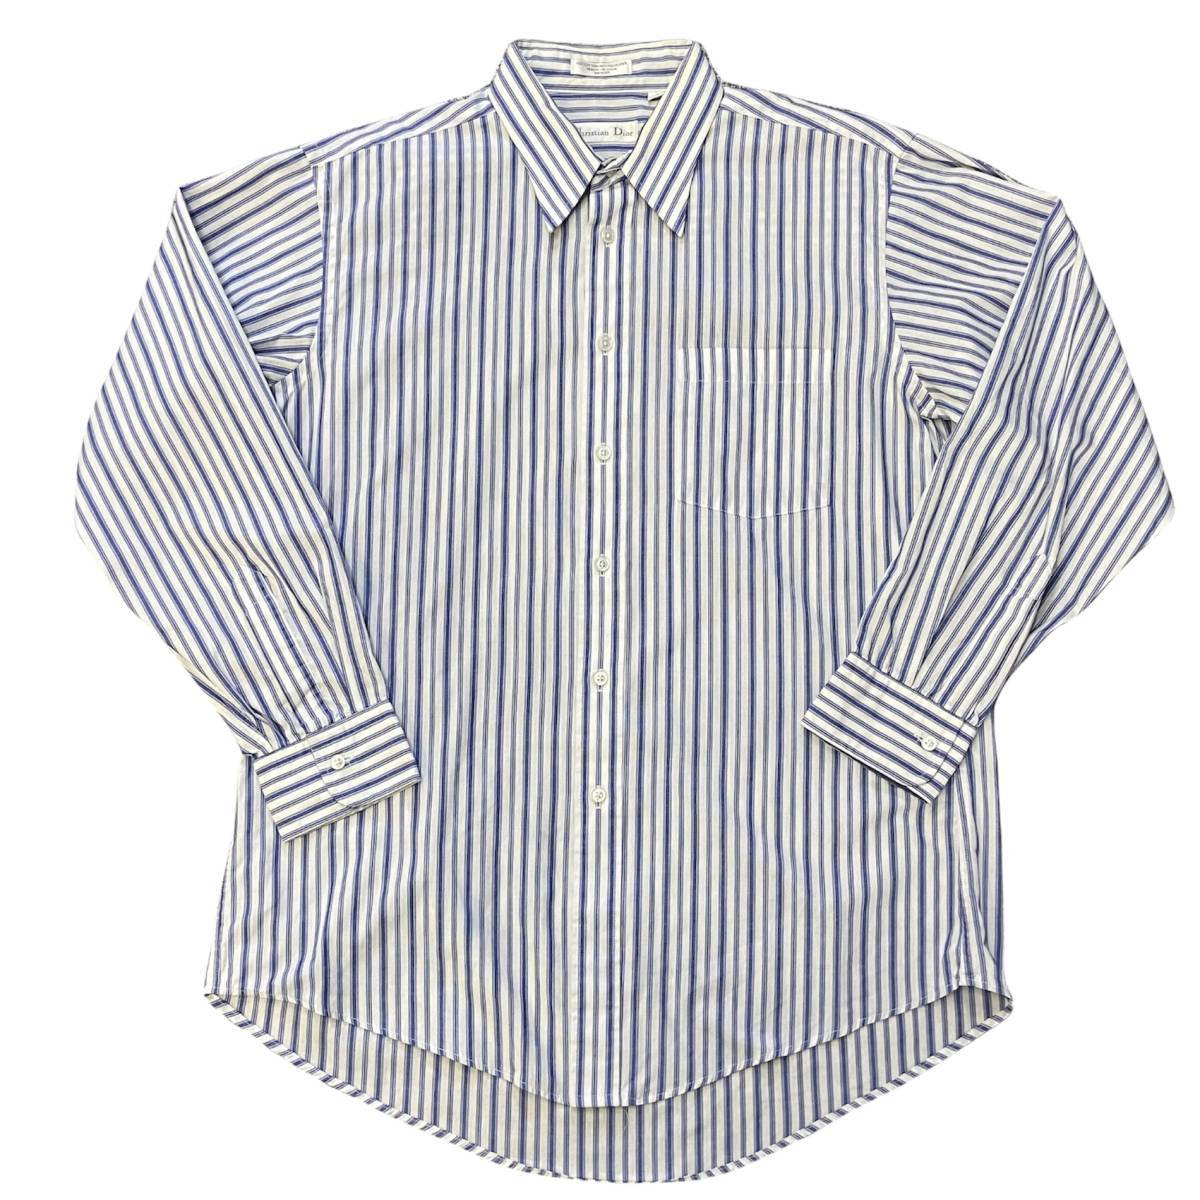 80s Christian Dior ストライプ柄 ボタンダウンシャツ 16 32-33 ブルー×ホワイト 長袖 シャツ クリスチャン ディオール ヴィンテージ_画像2